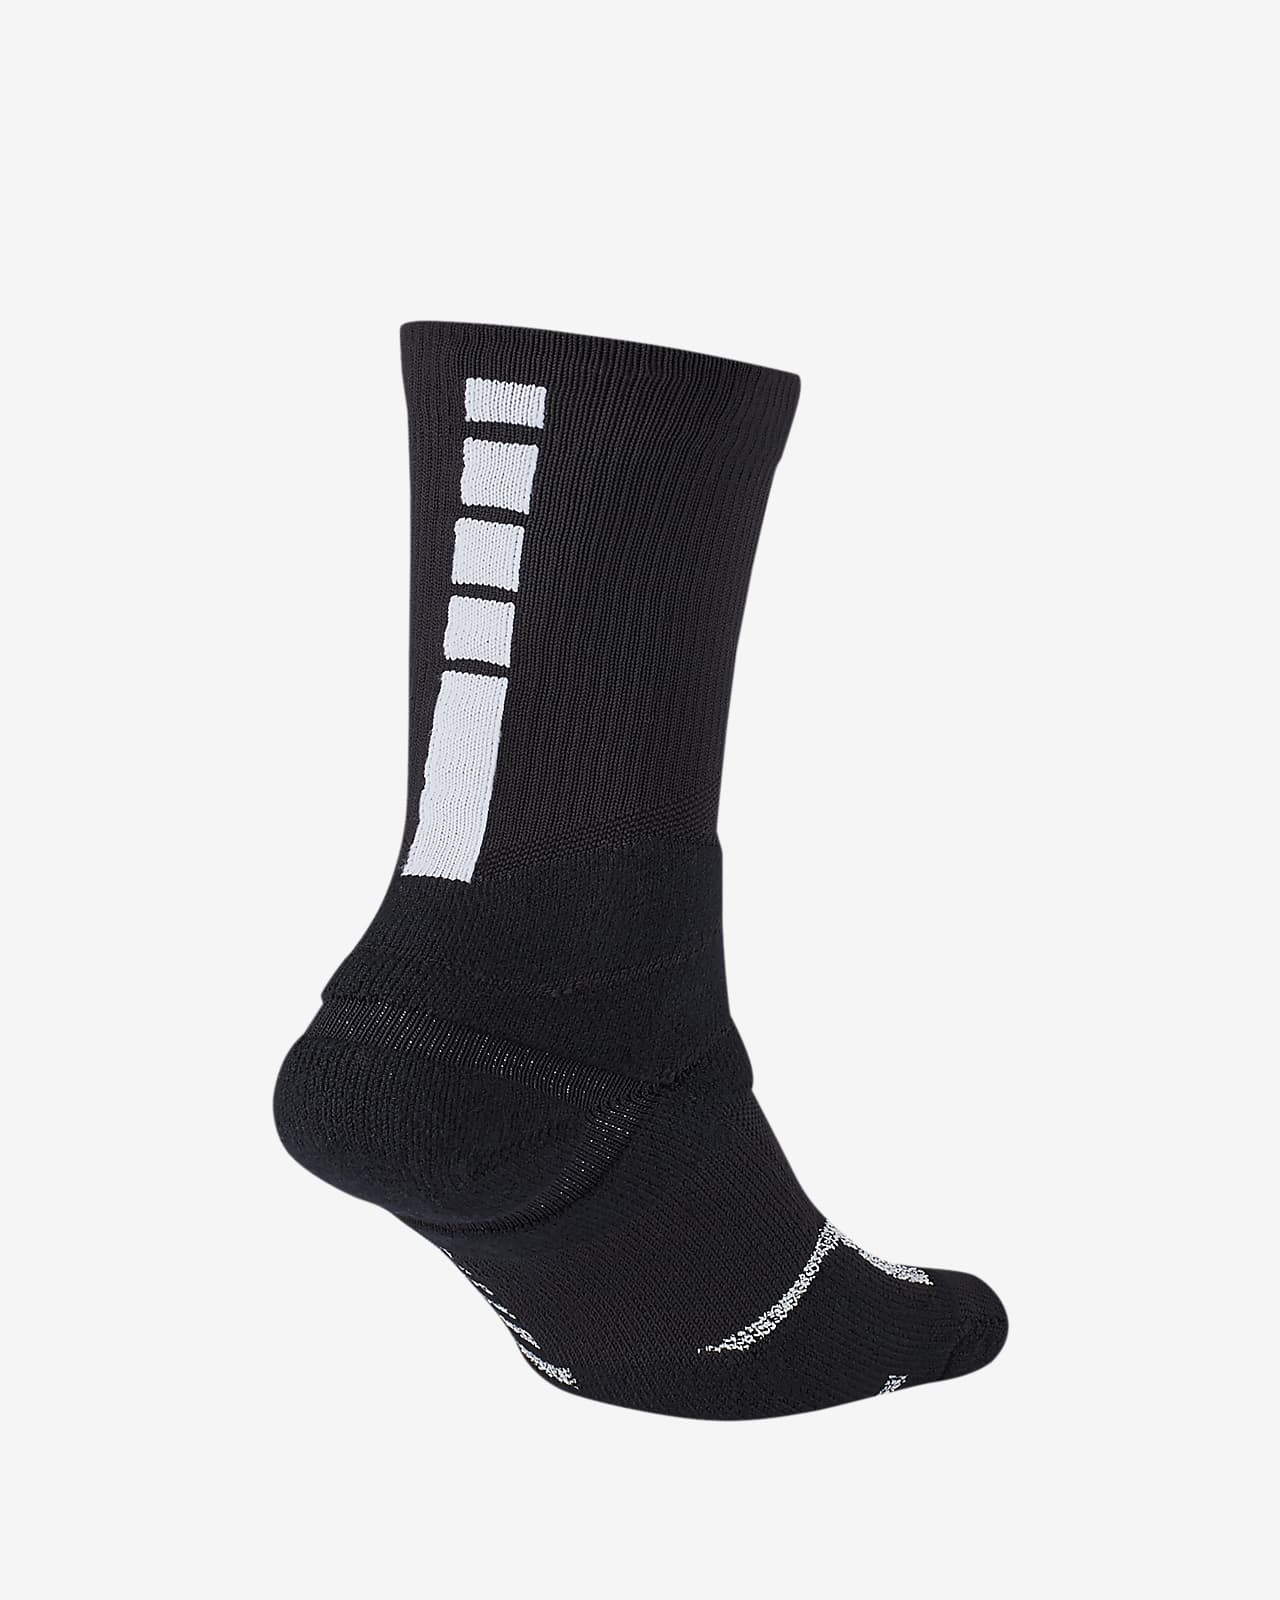 nba power grip socks